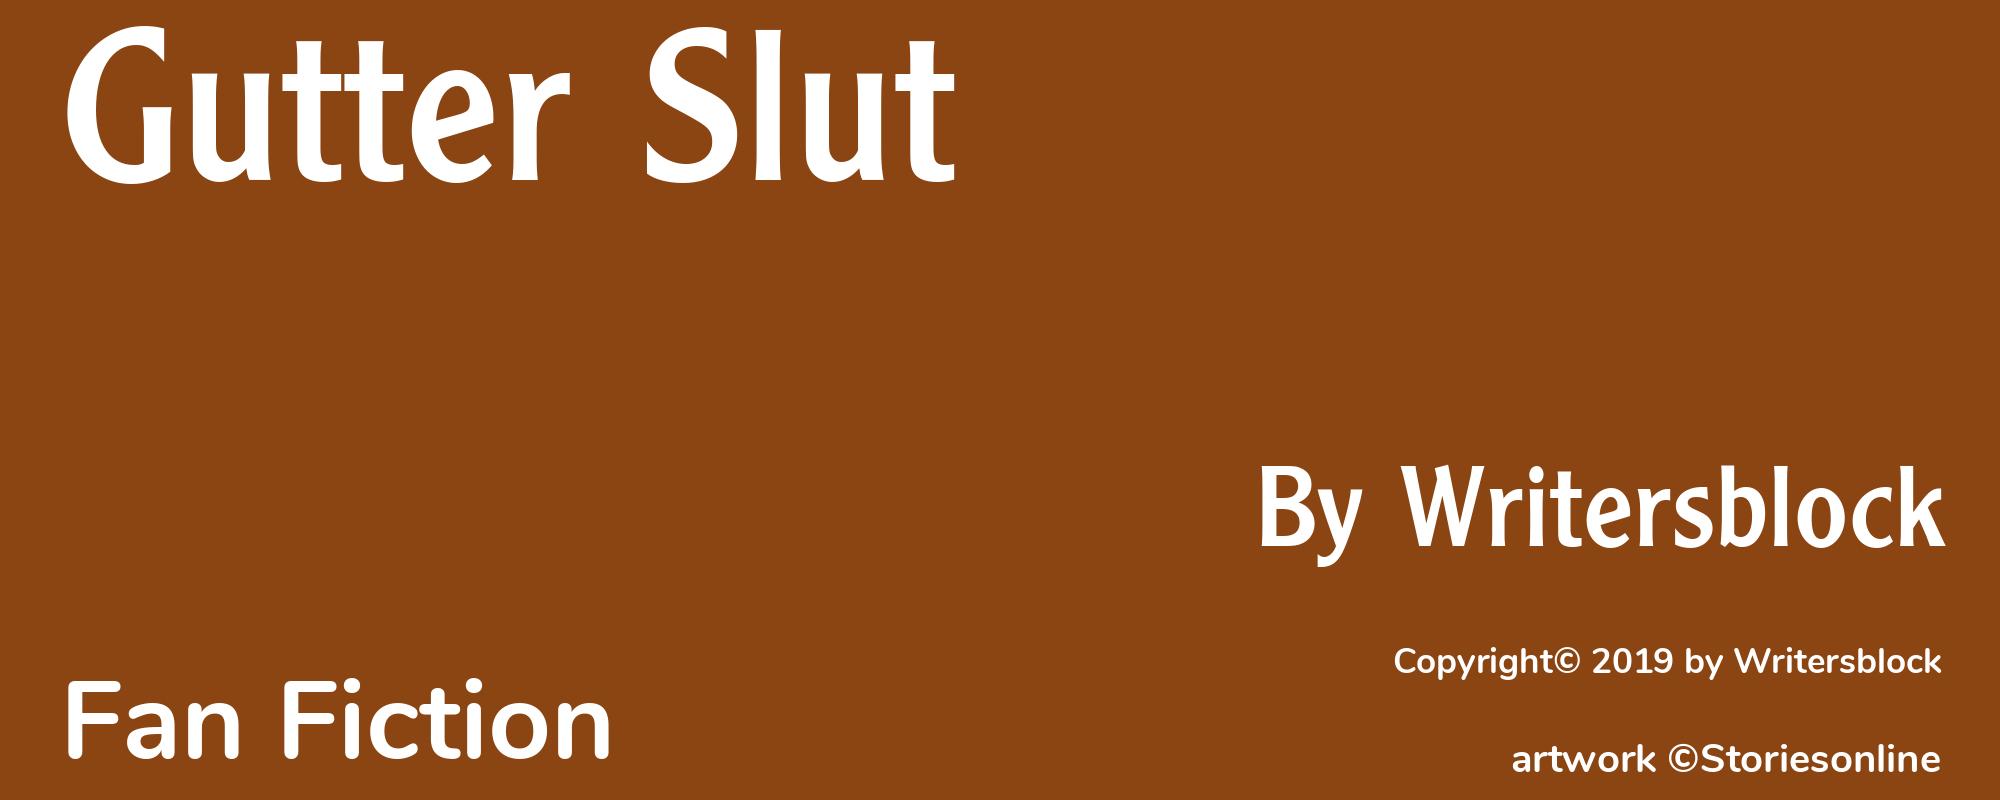 Gutter Slut - Cover